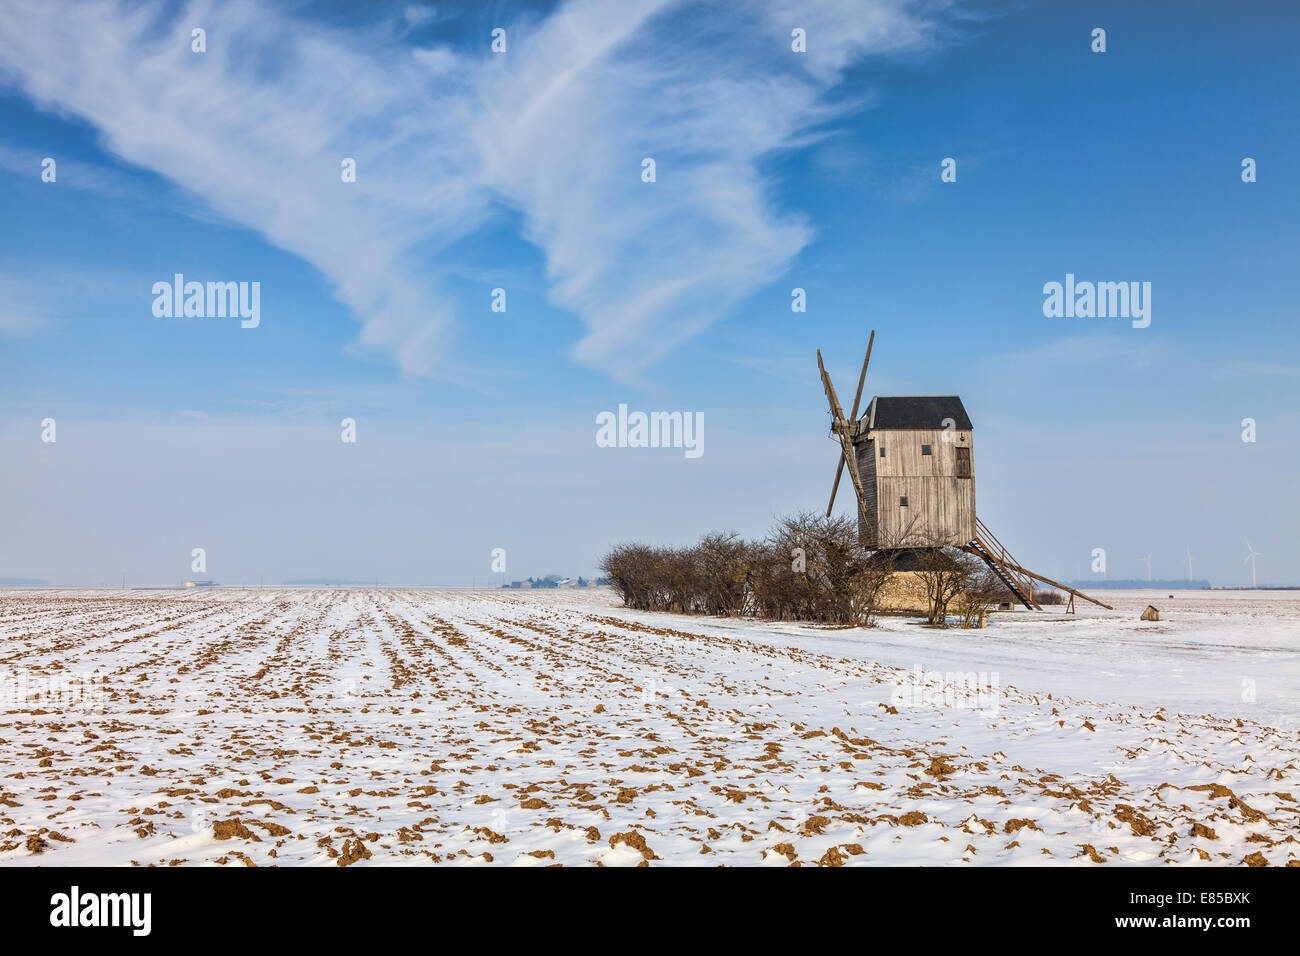 Winterlandschaft in der zentralen Region von Frankreich, mit einer traditionellen hölzernen Windmühle Stockfoto